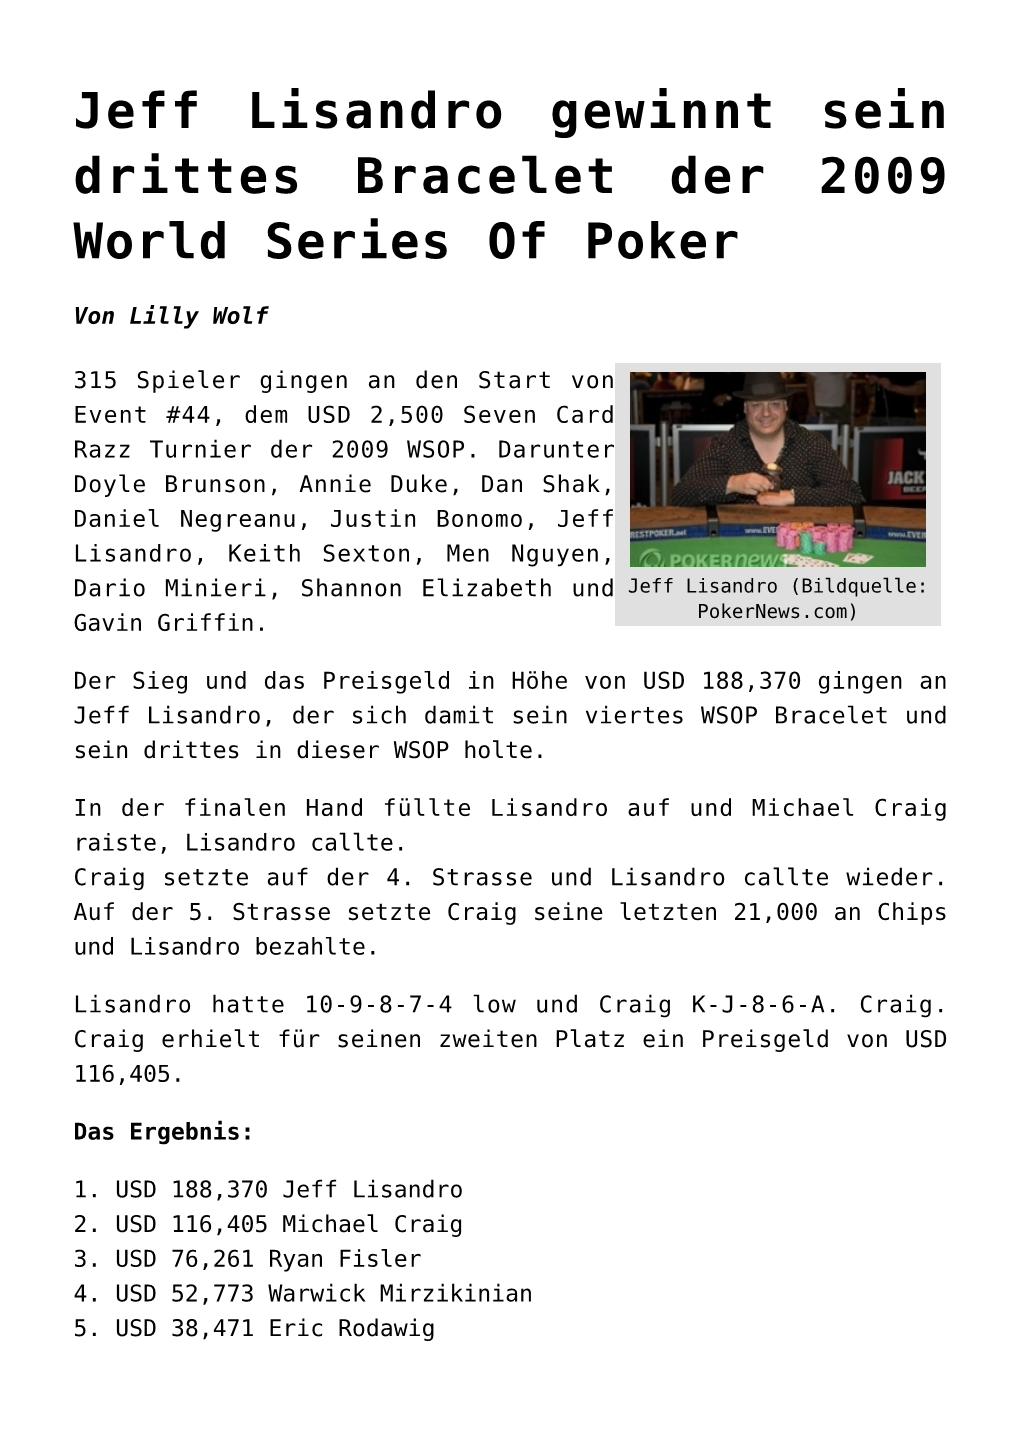 Jeff Lisandro Gewinnt Sein Drittes Bracelet Der 2009 World Series of Poker